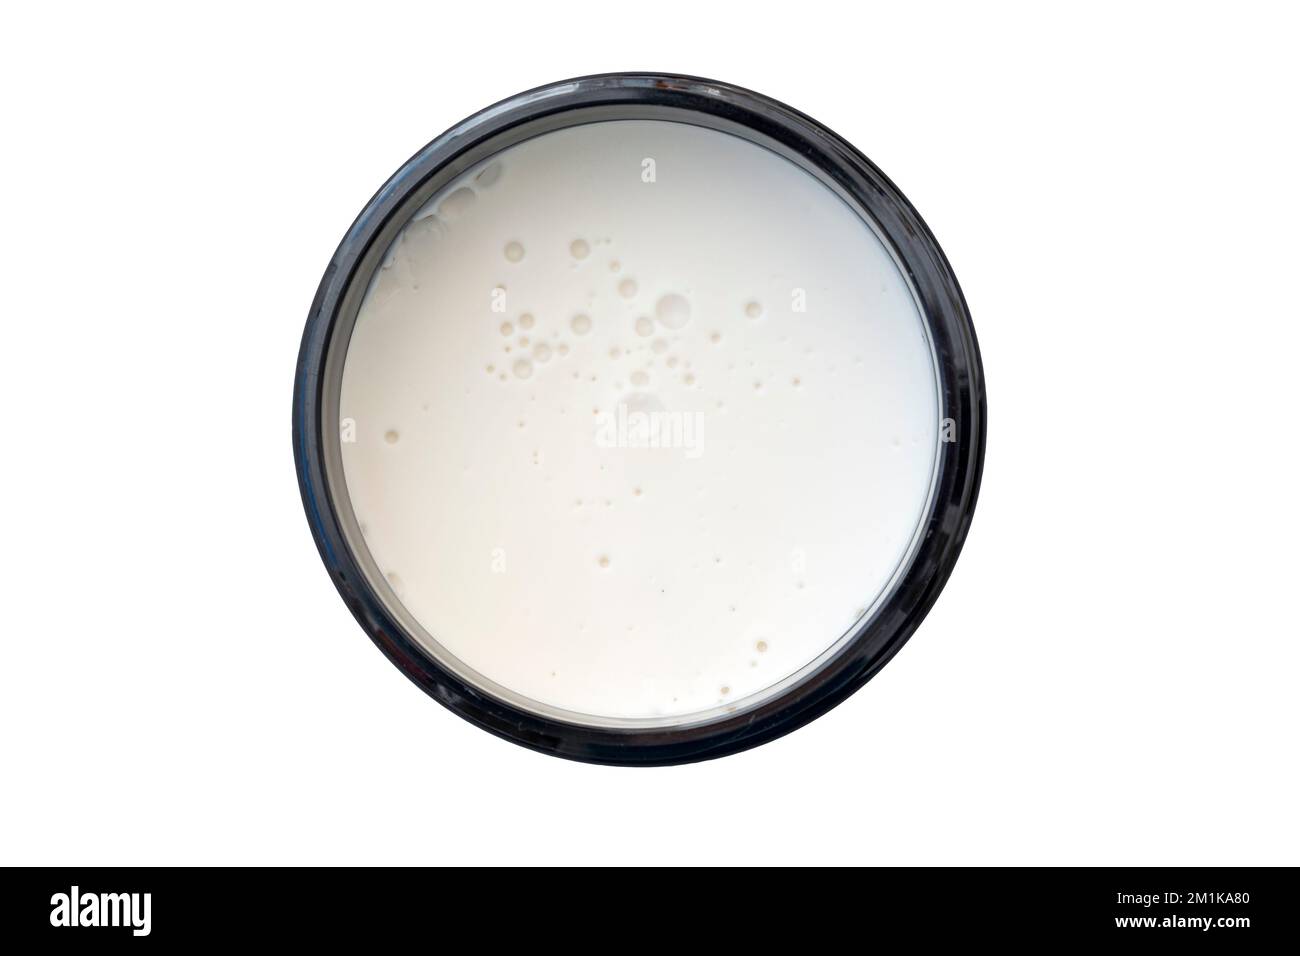 Crème cosmétique, cire, mousse dans un récipient rond noir isolé sur blanc, vue de dessus Banque D'Images